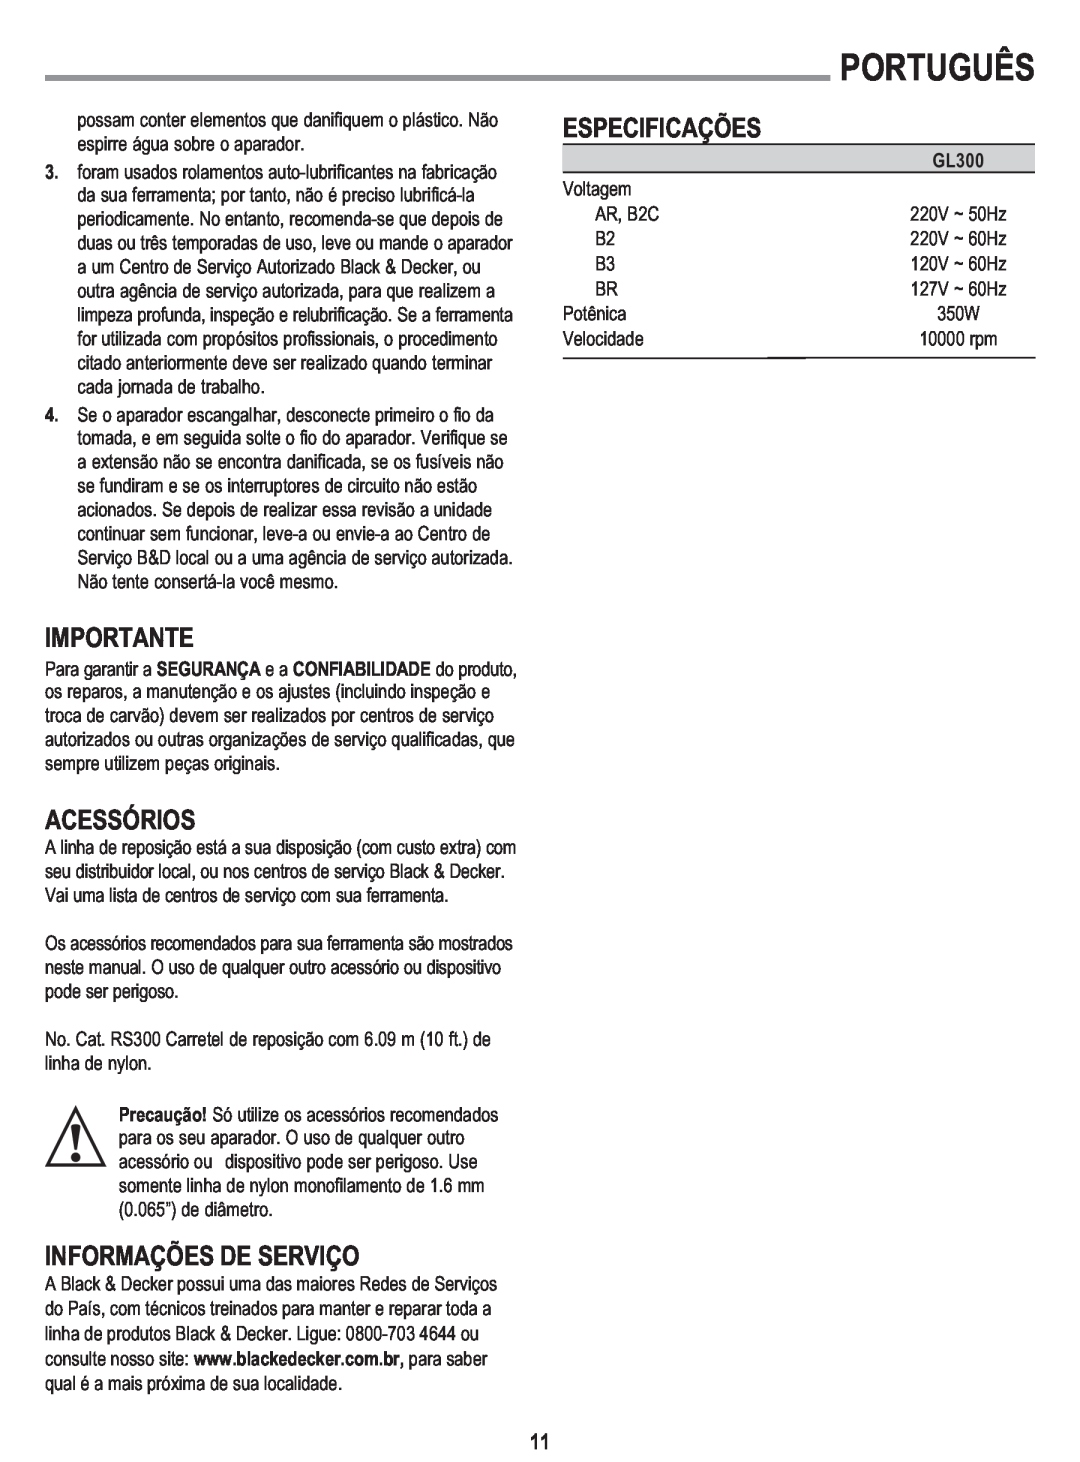 Black & Decker GL300 instruction manual Acessórios, Informações De Serviço, Especificações, Português, Importante 